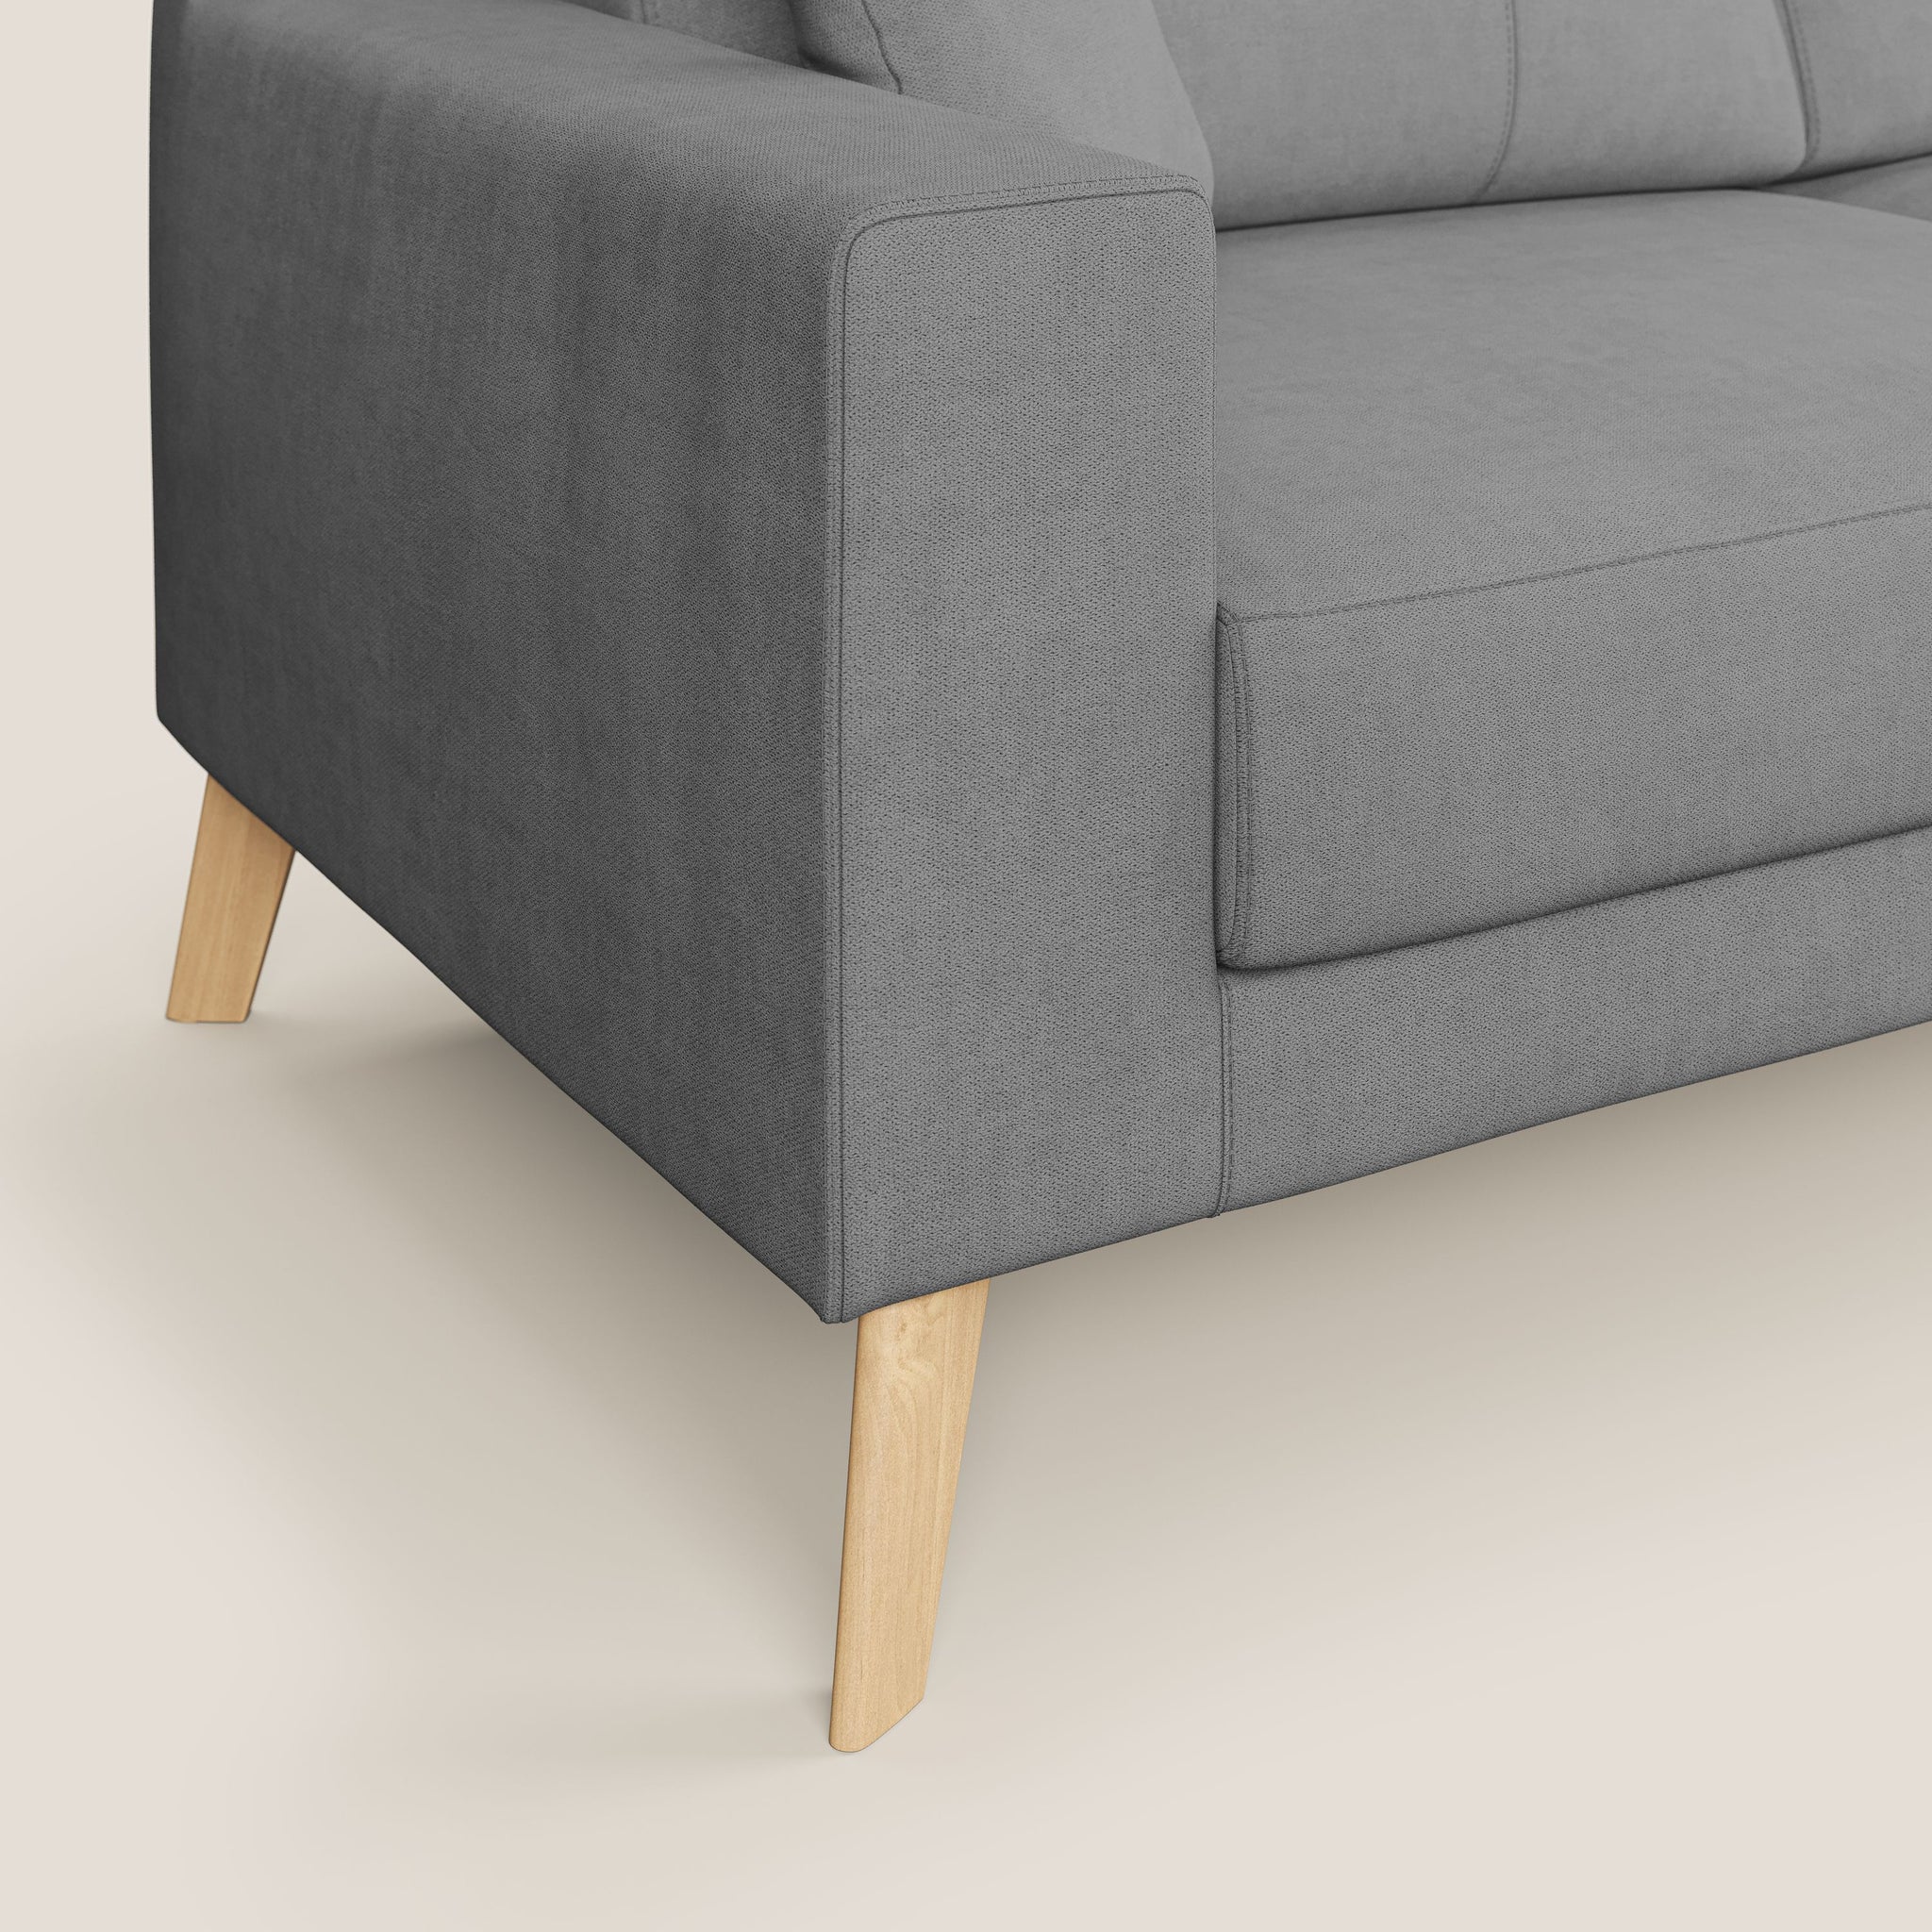 Danish divano angolare REVERSIBILE in tessuto morbido impermeabile T02